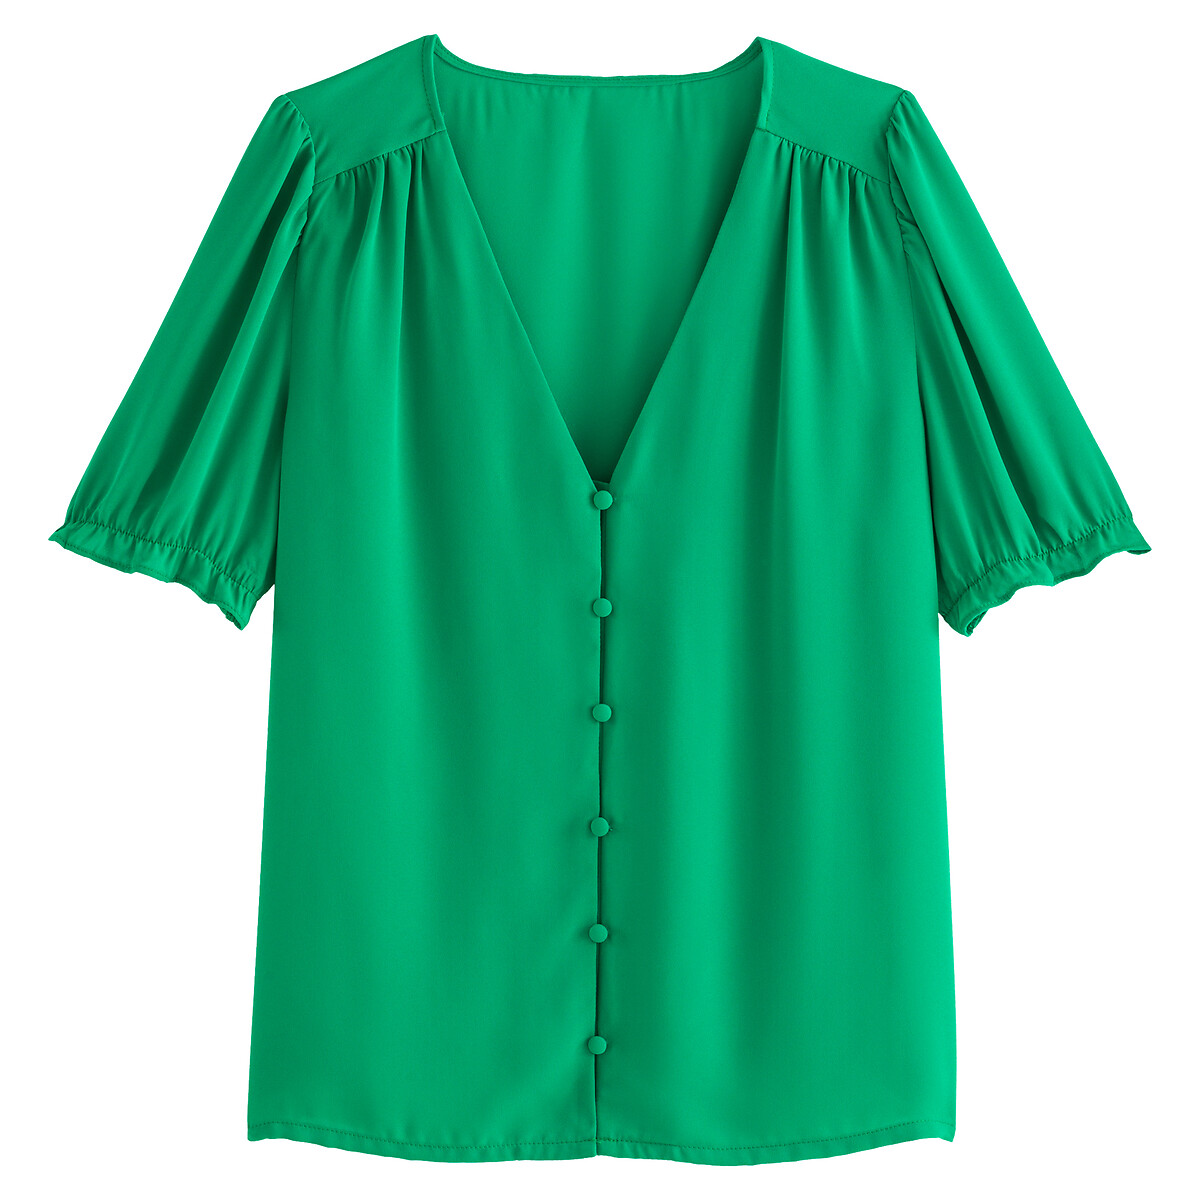 Блузка LA REDOUTE COLLECTIONS Блузка С V-образным вырезом с короткими рукавами 44 (FR) - 50 (RUS) зеленый, размер 44 (FR) - 50 (RUS) Блузка С V-образным вырезом с короткими рукавами 44 (FR) - 50 (RUS) зеленый - фото 5